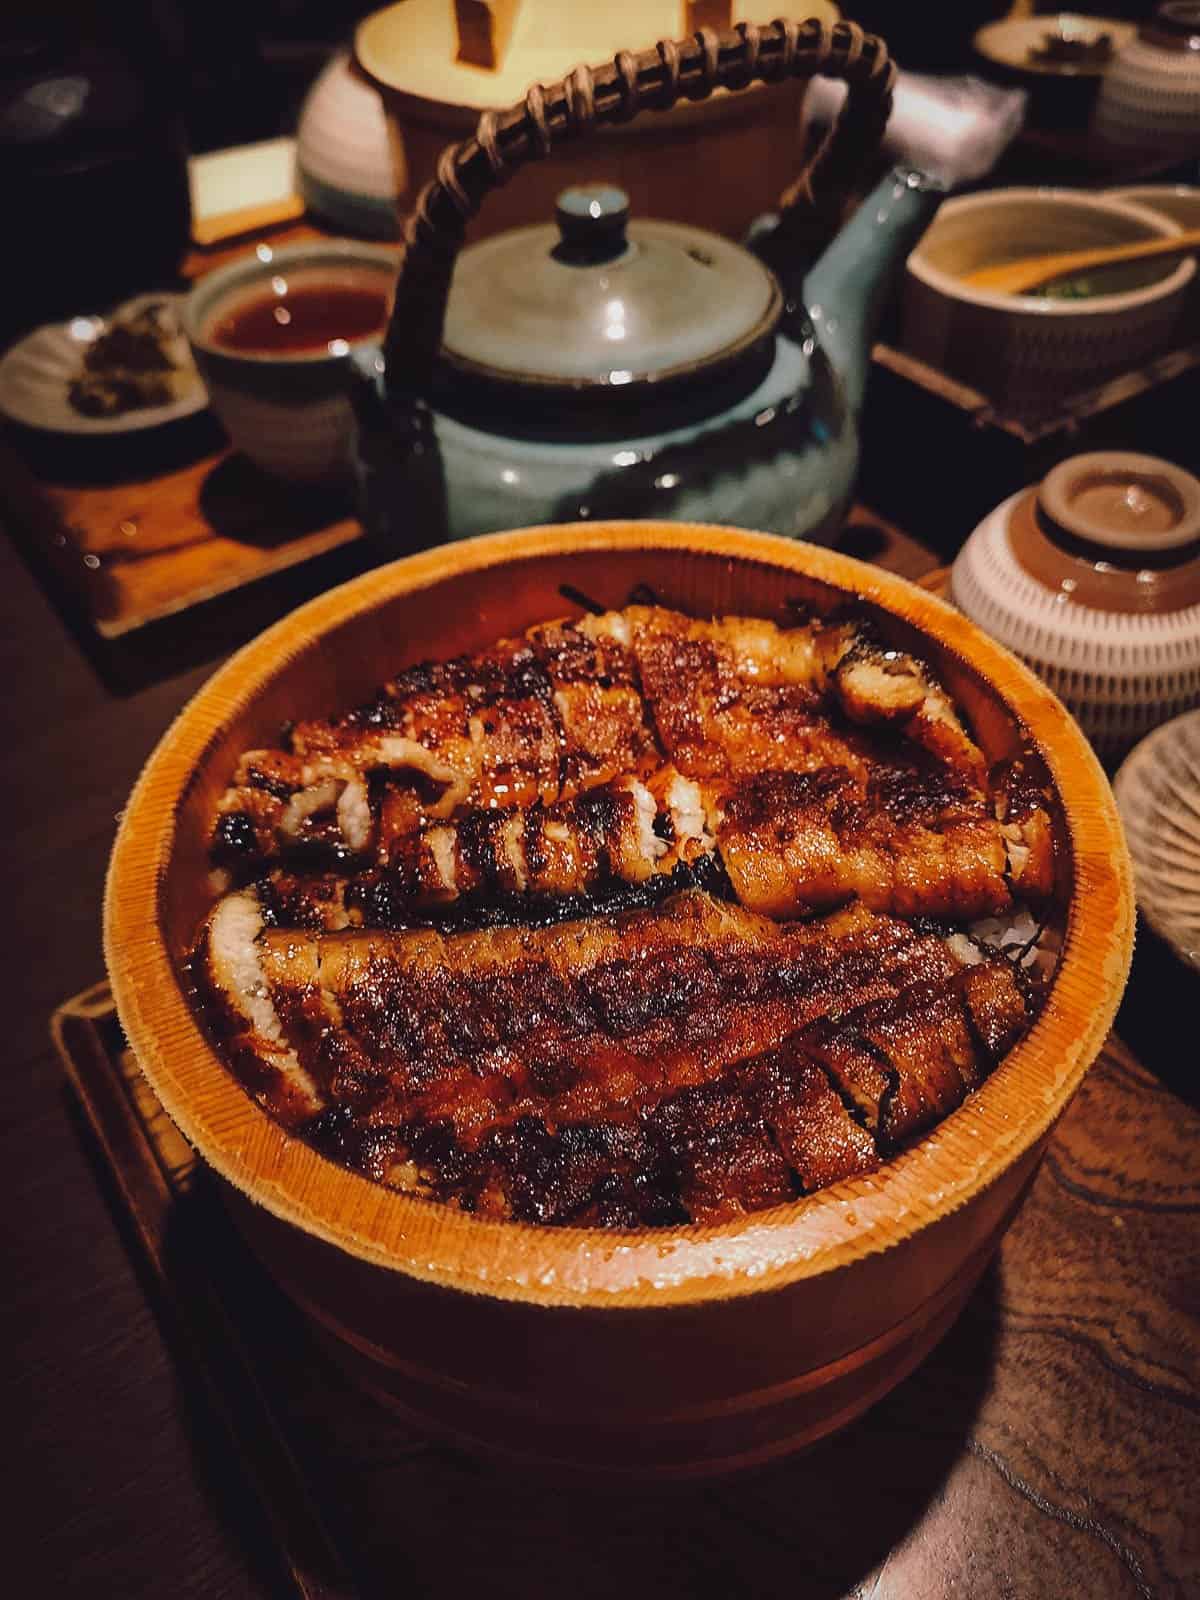 Hitsumabushi with yakumi as a side dish, a specialty of Nagoya